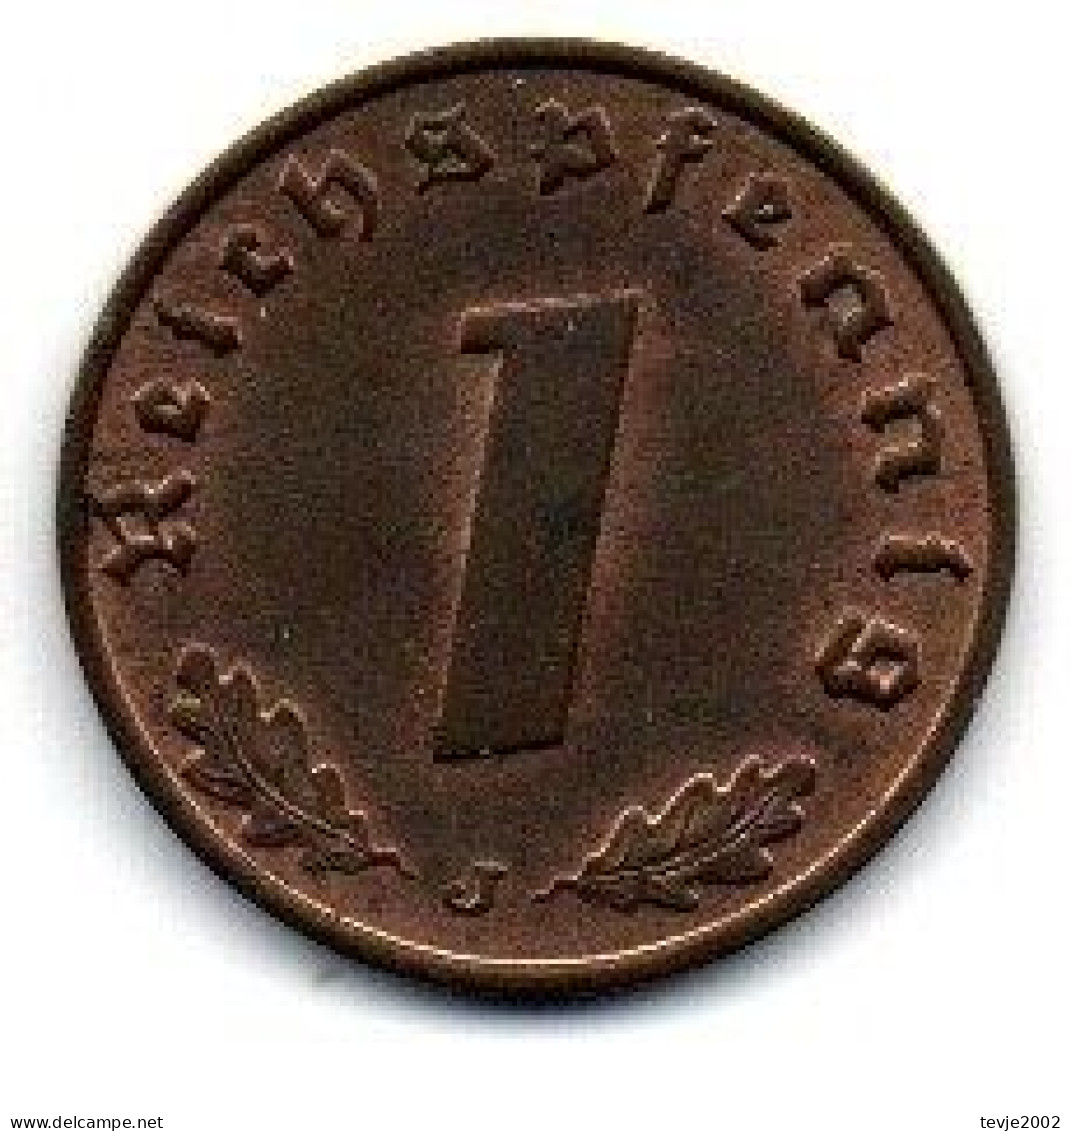 Deutsches Reich - 1 Reichspfennig - 1940 - J - 1 Reichspfennig